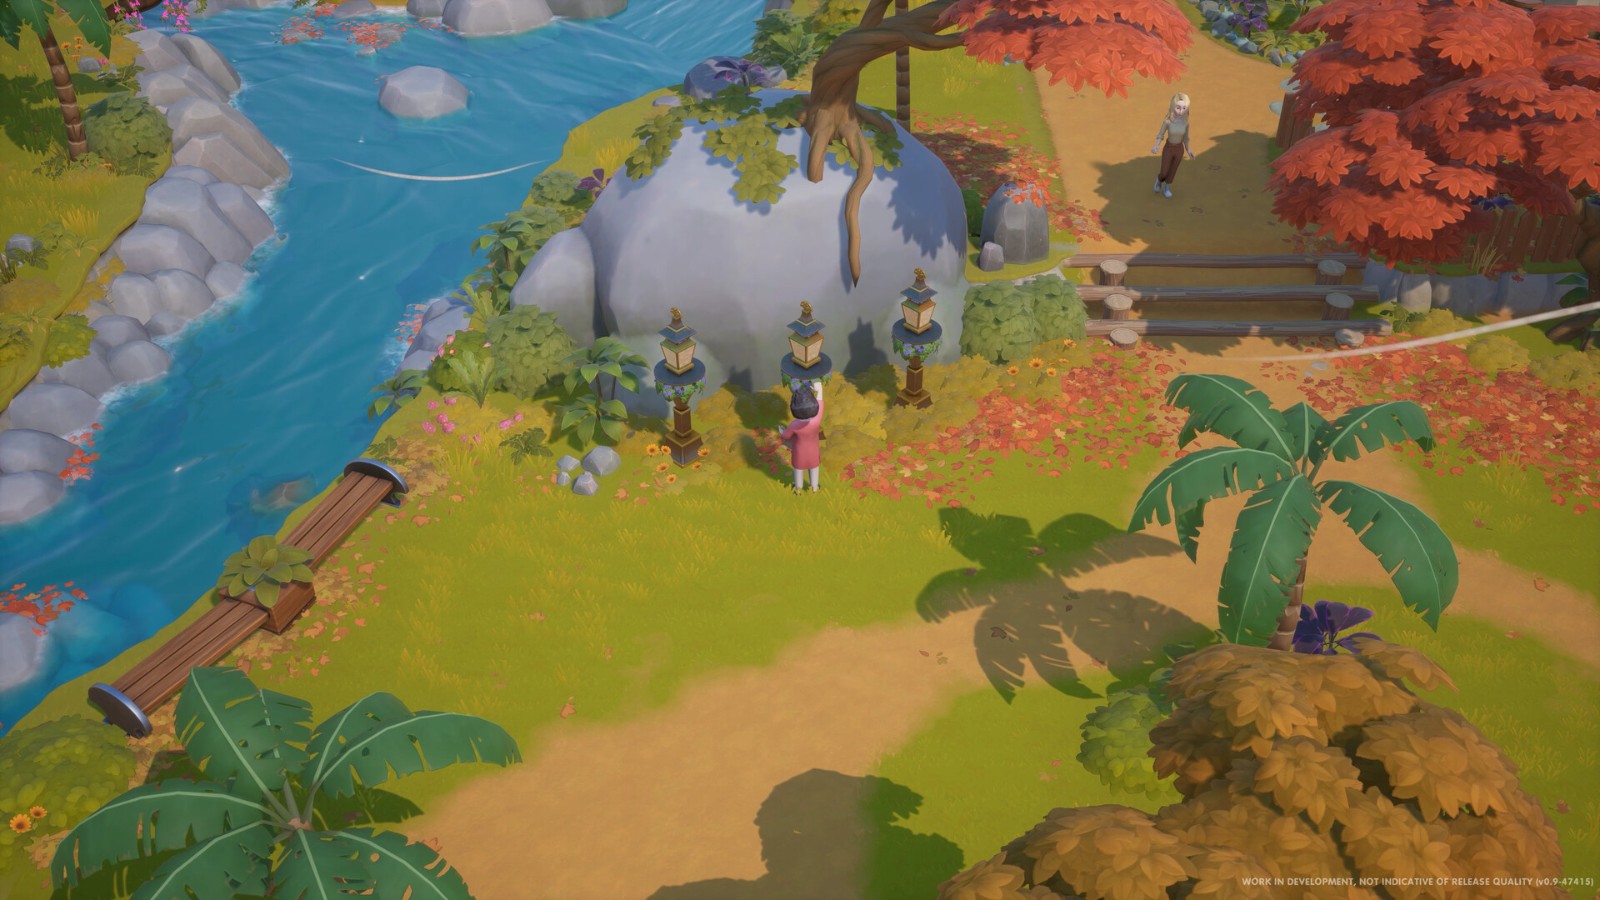 農場休閒模擬遊戲《珊瑚島》10月11日登陸Steam搶先體驗